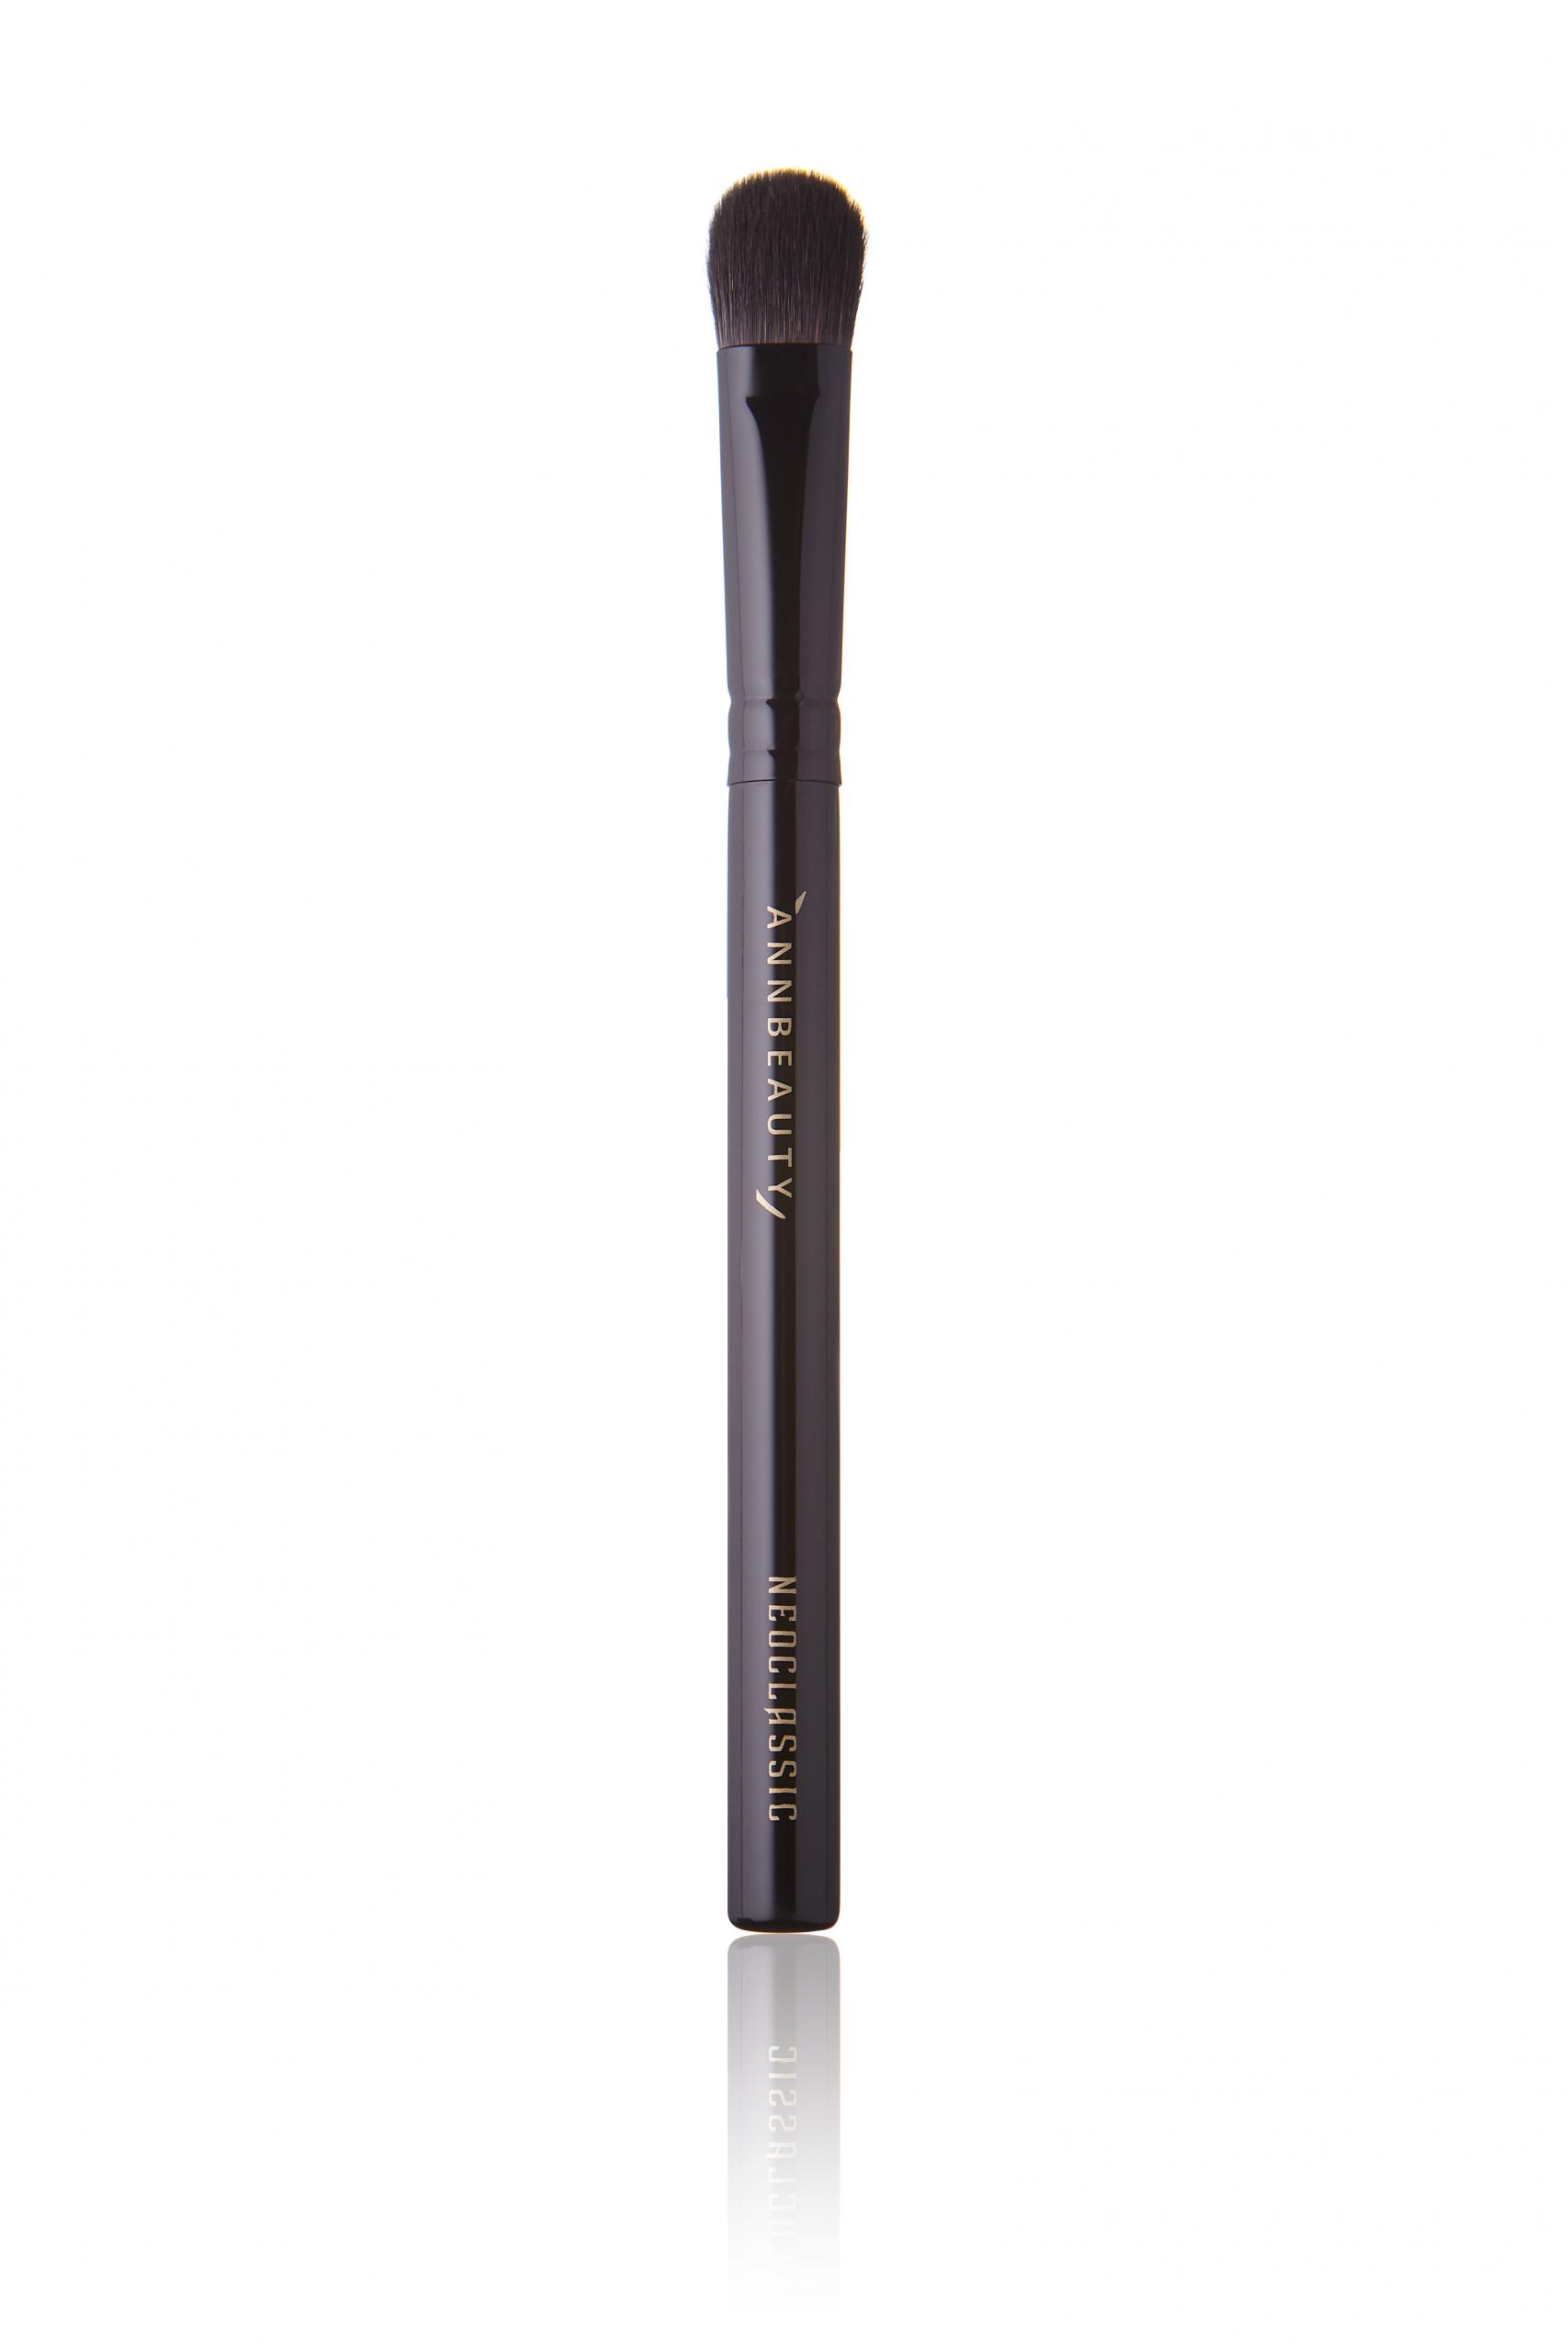 Annbeauty N6 - для нанесения теней кремовой и сухой текстуры на все подвижное веко.